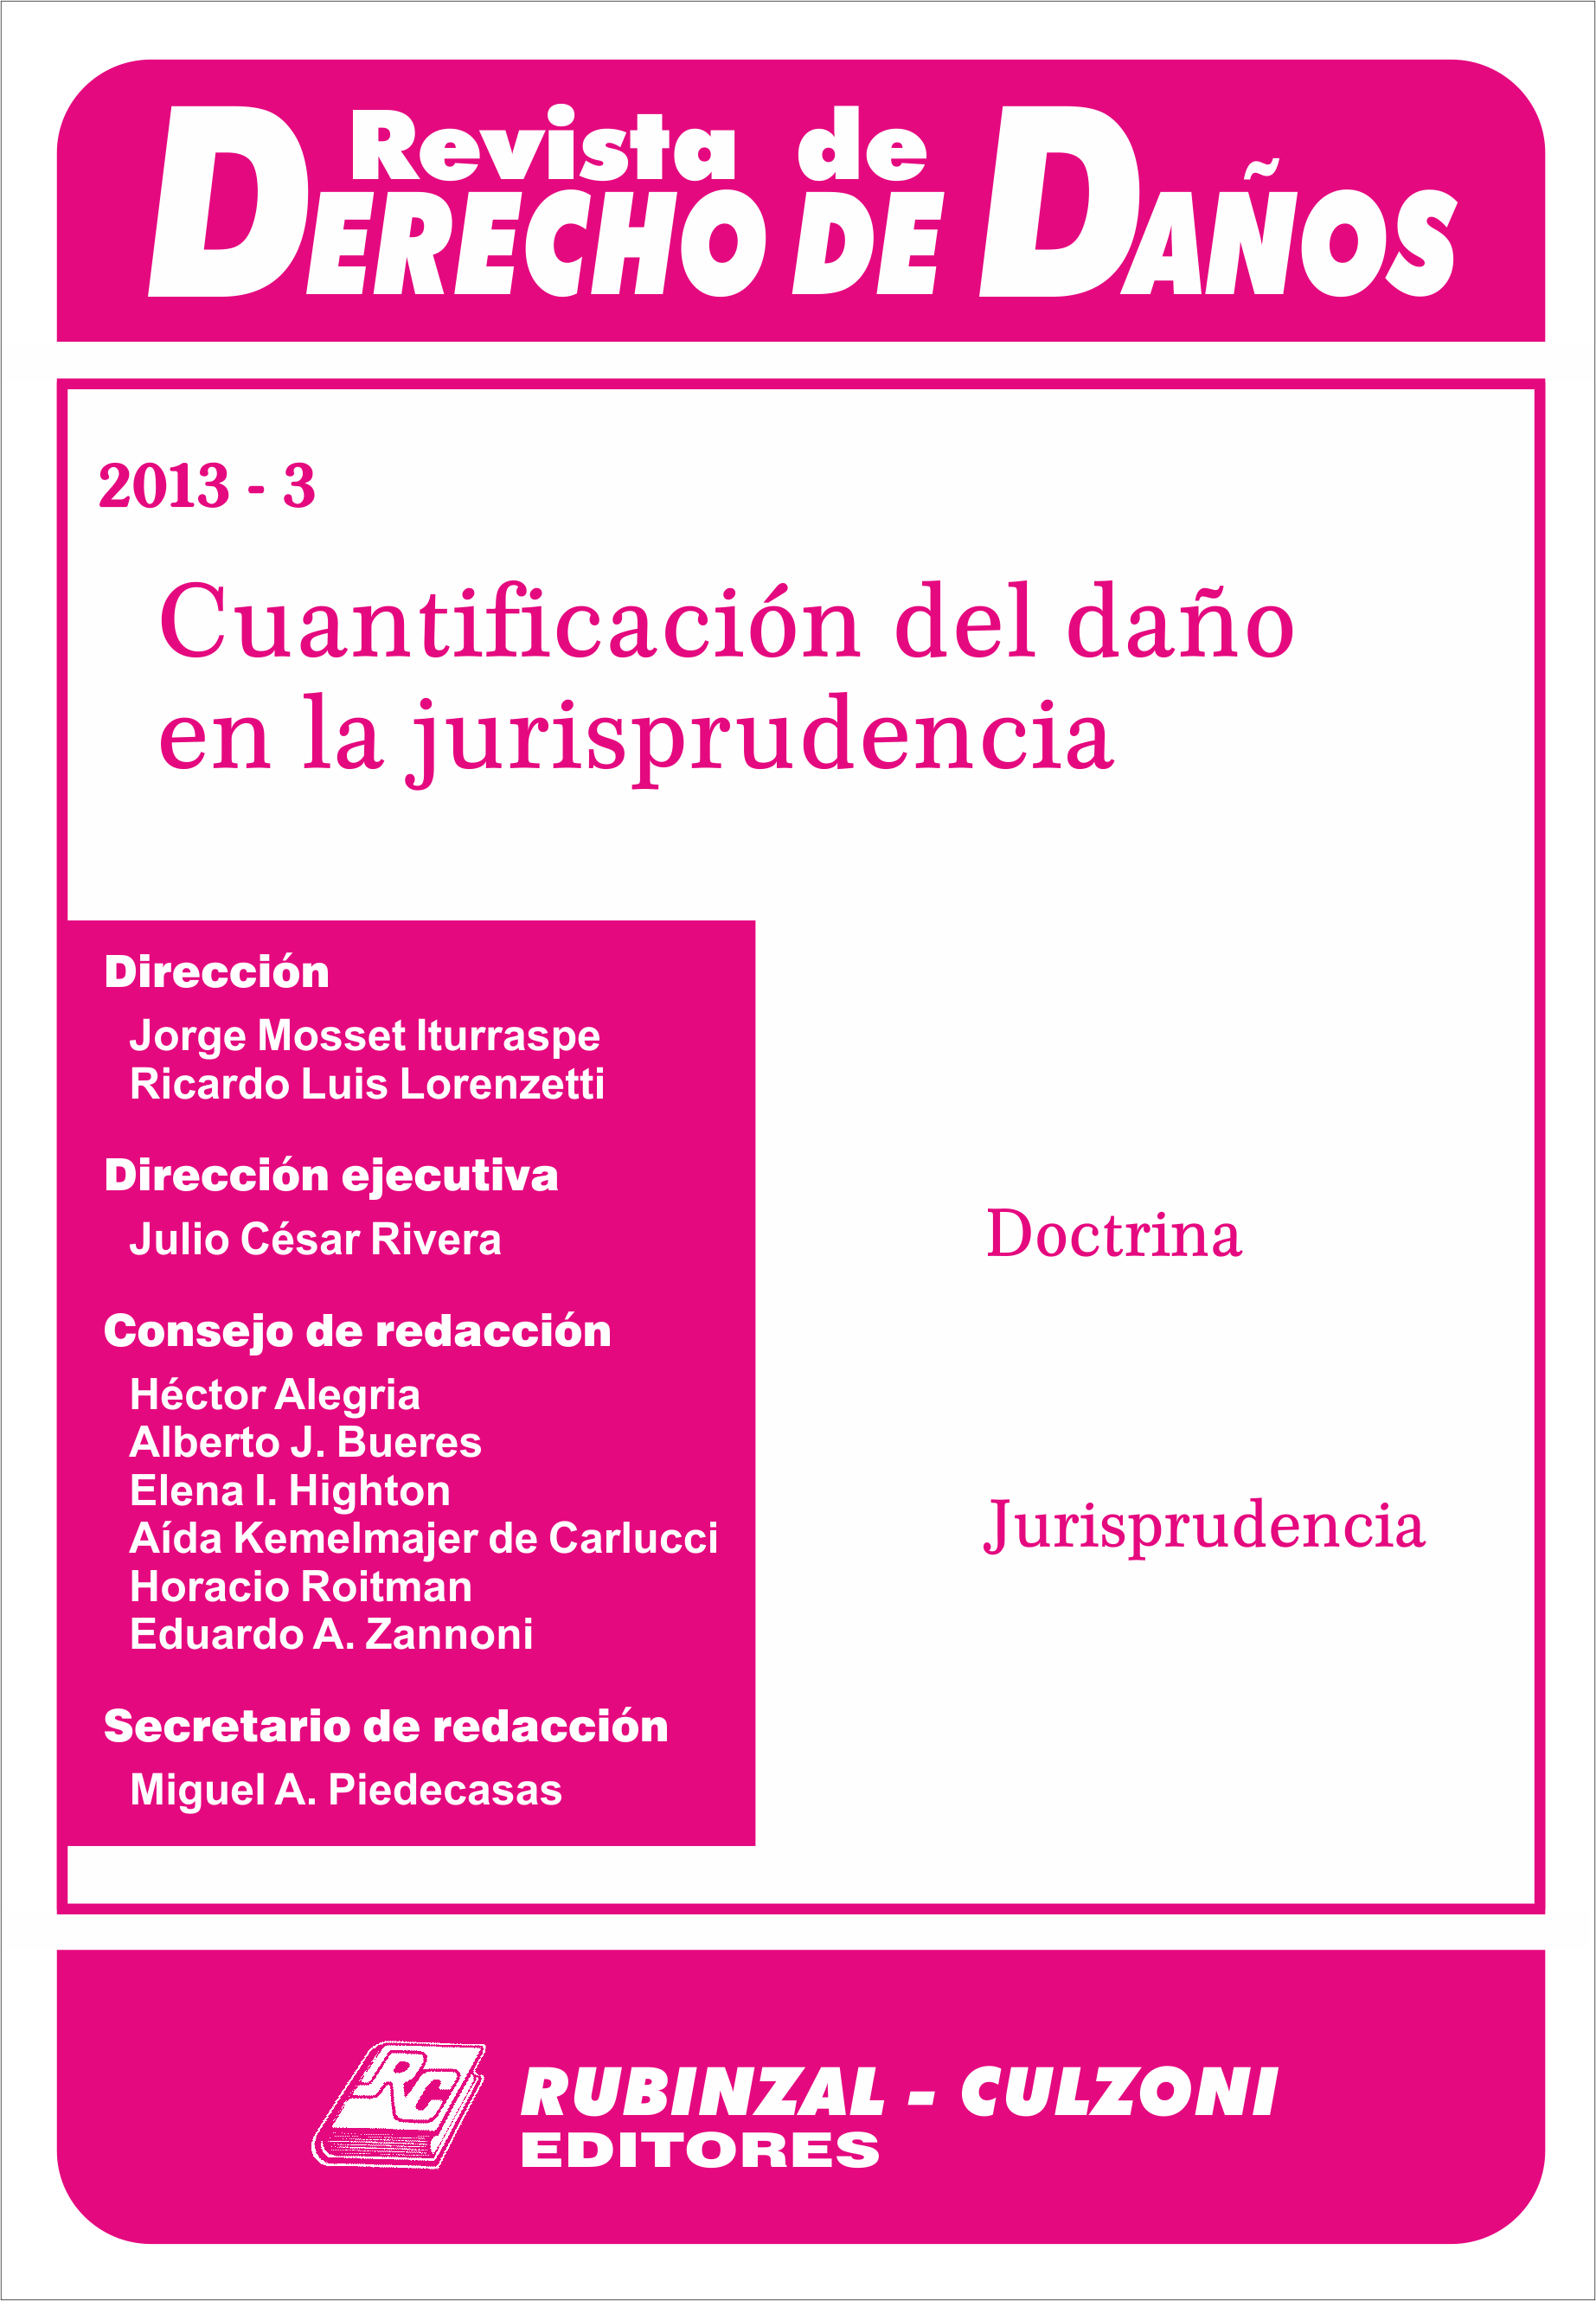 Revista de Derecho de Daños - Cuantificación del daño en la jurisprudencia.